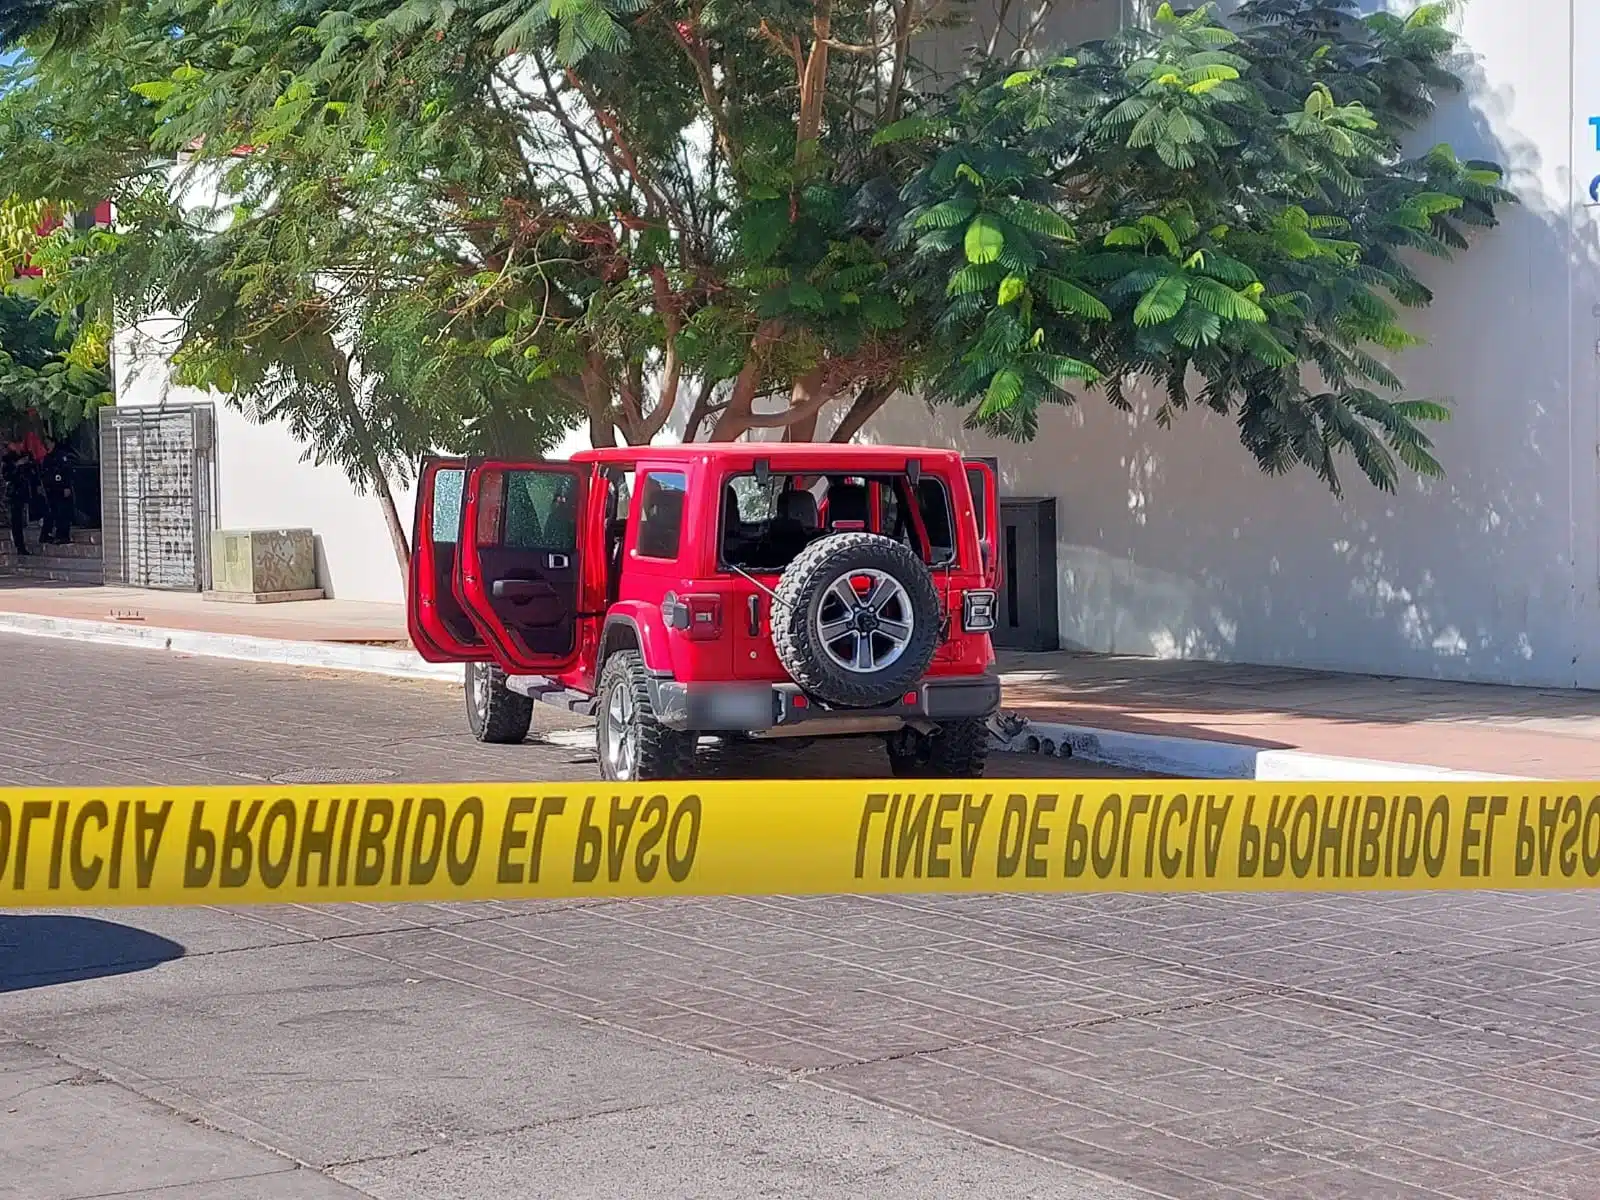 Camioneta Jeep Rubicón baleado en Culiacán